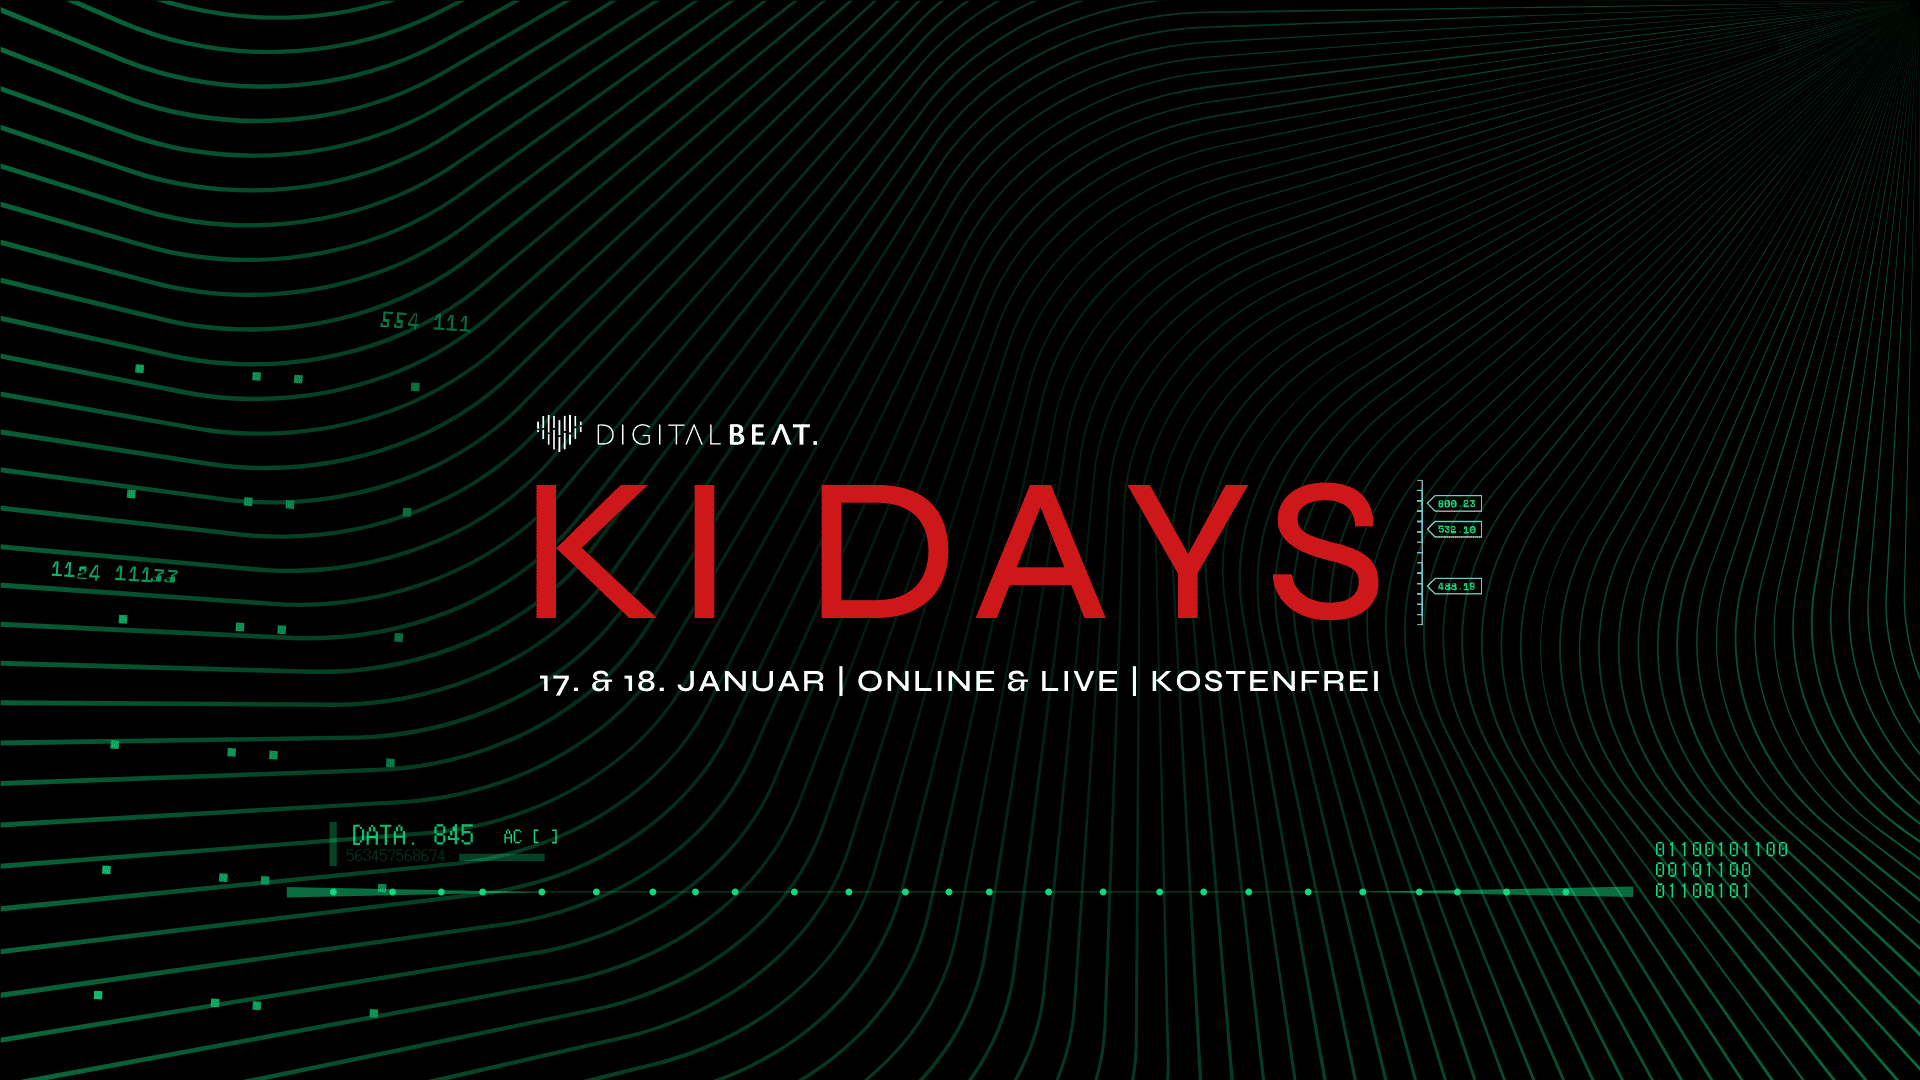 Die KI Days von Digital Beat